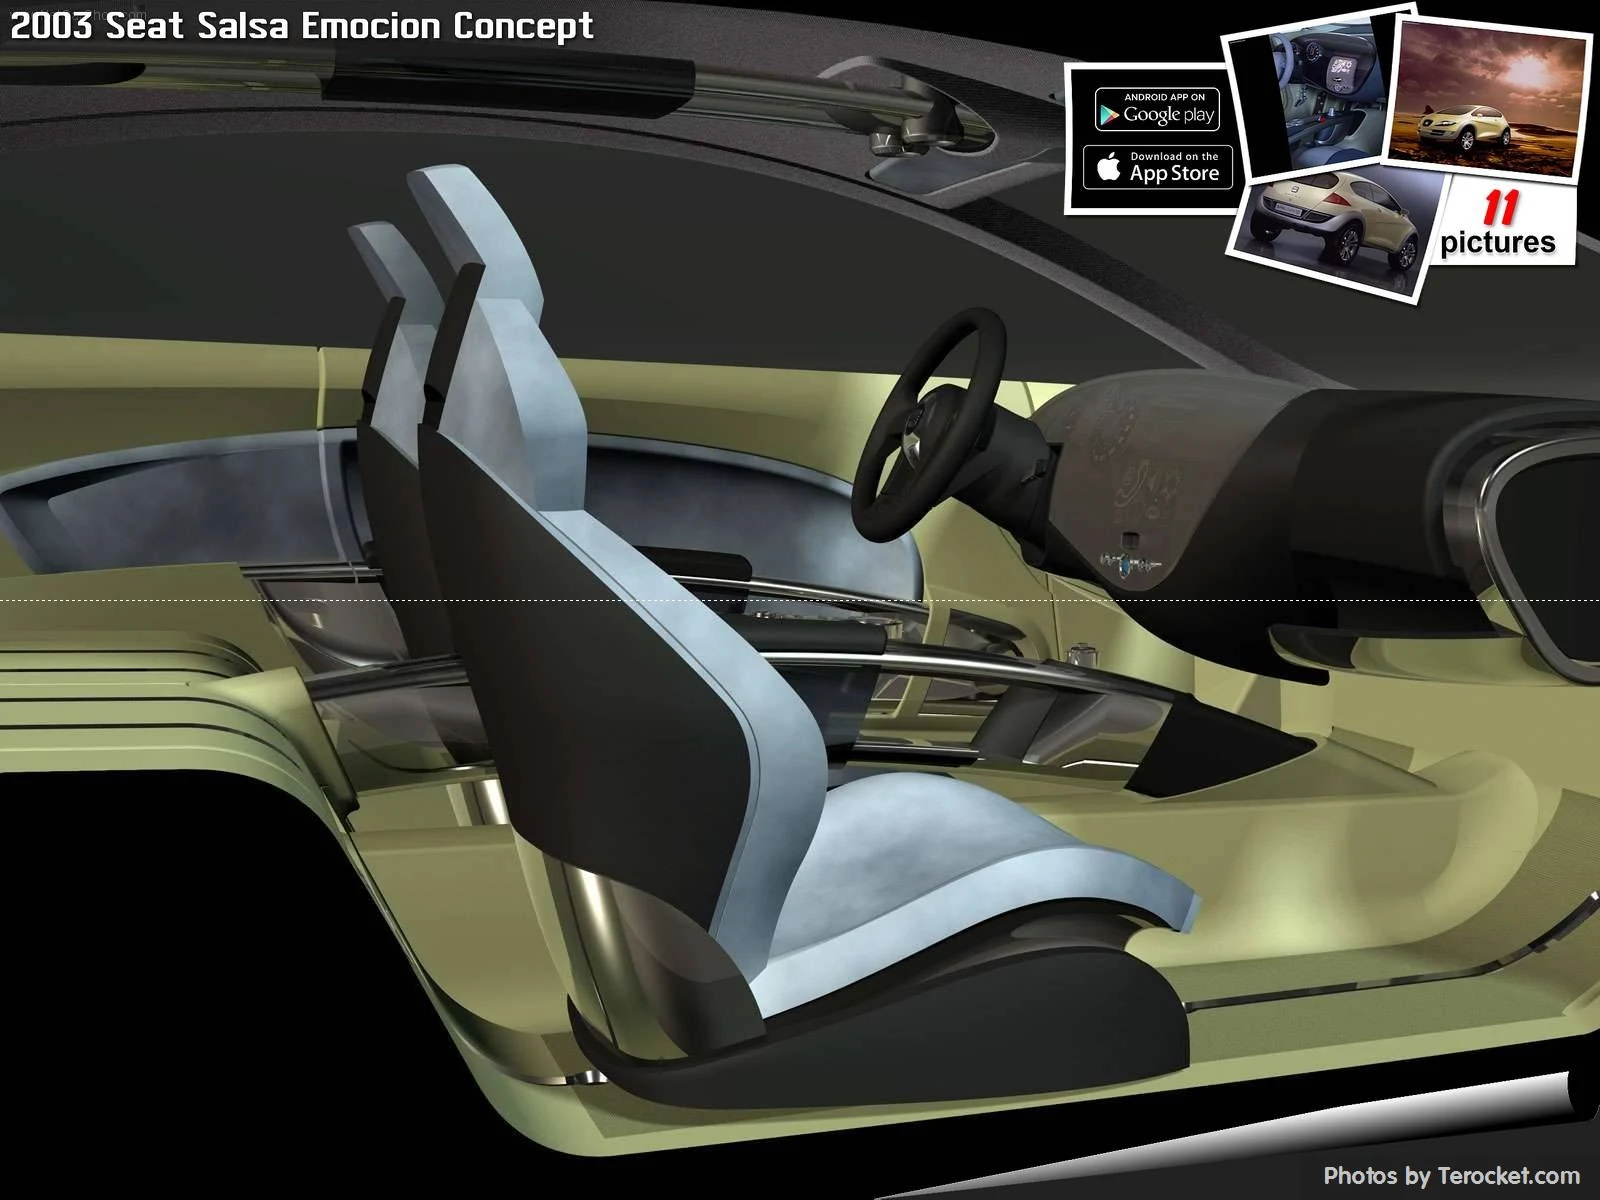 Hình ảnh xe ô tô Seat Salsa Emocion Concept 2003 & nội ngoại thất